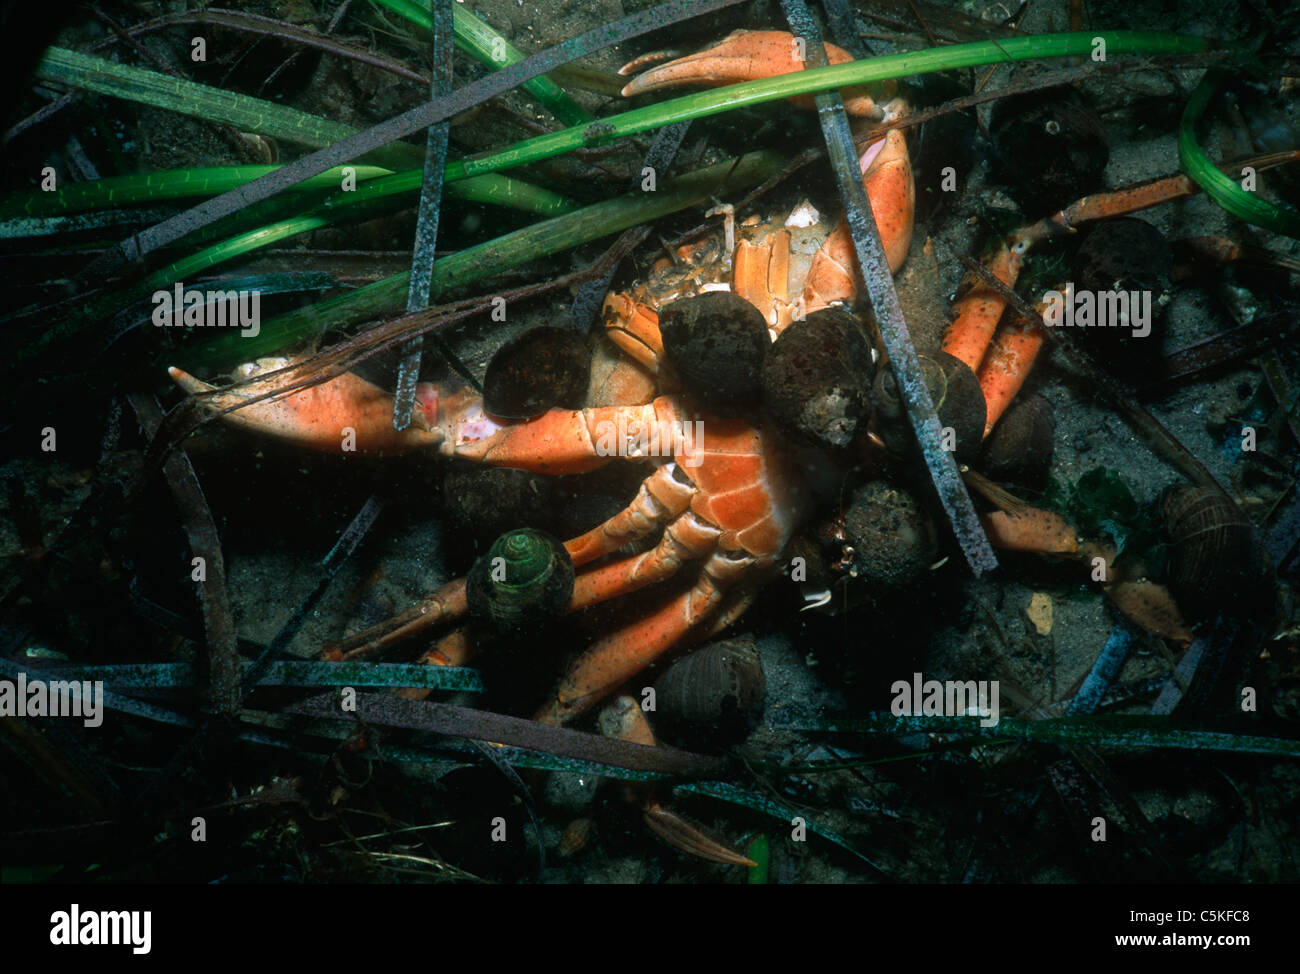 L'ermite acadien (Pagurus acadiuanus) crabes morts d'évacuation. Le Massachusetts, États-Unis, Océan Atlantique Banque D'Images